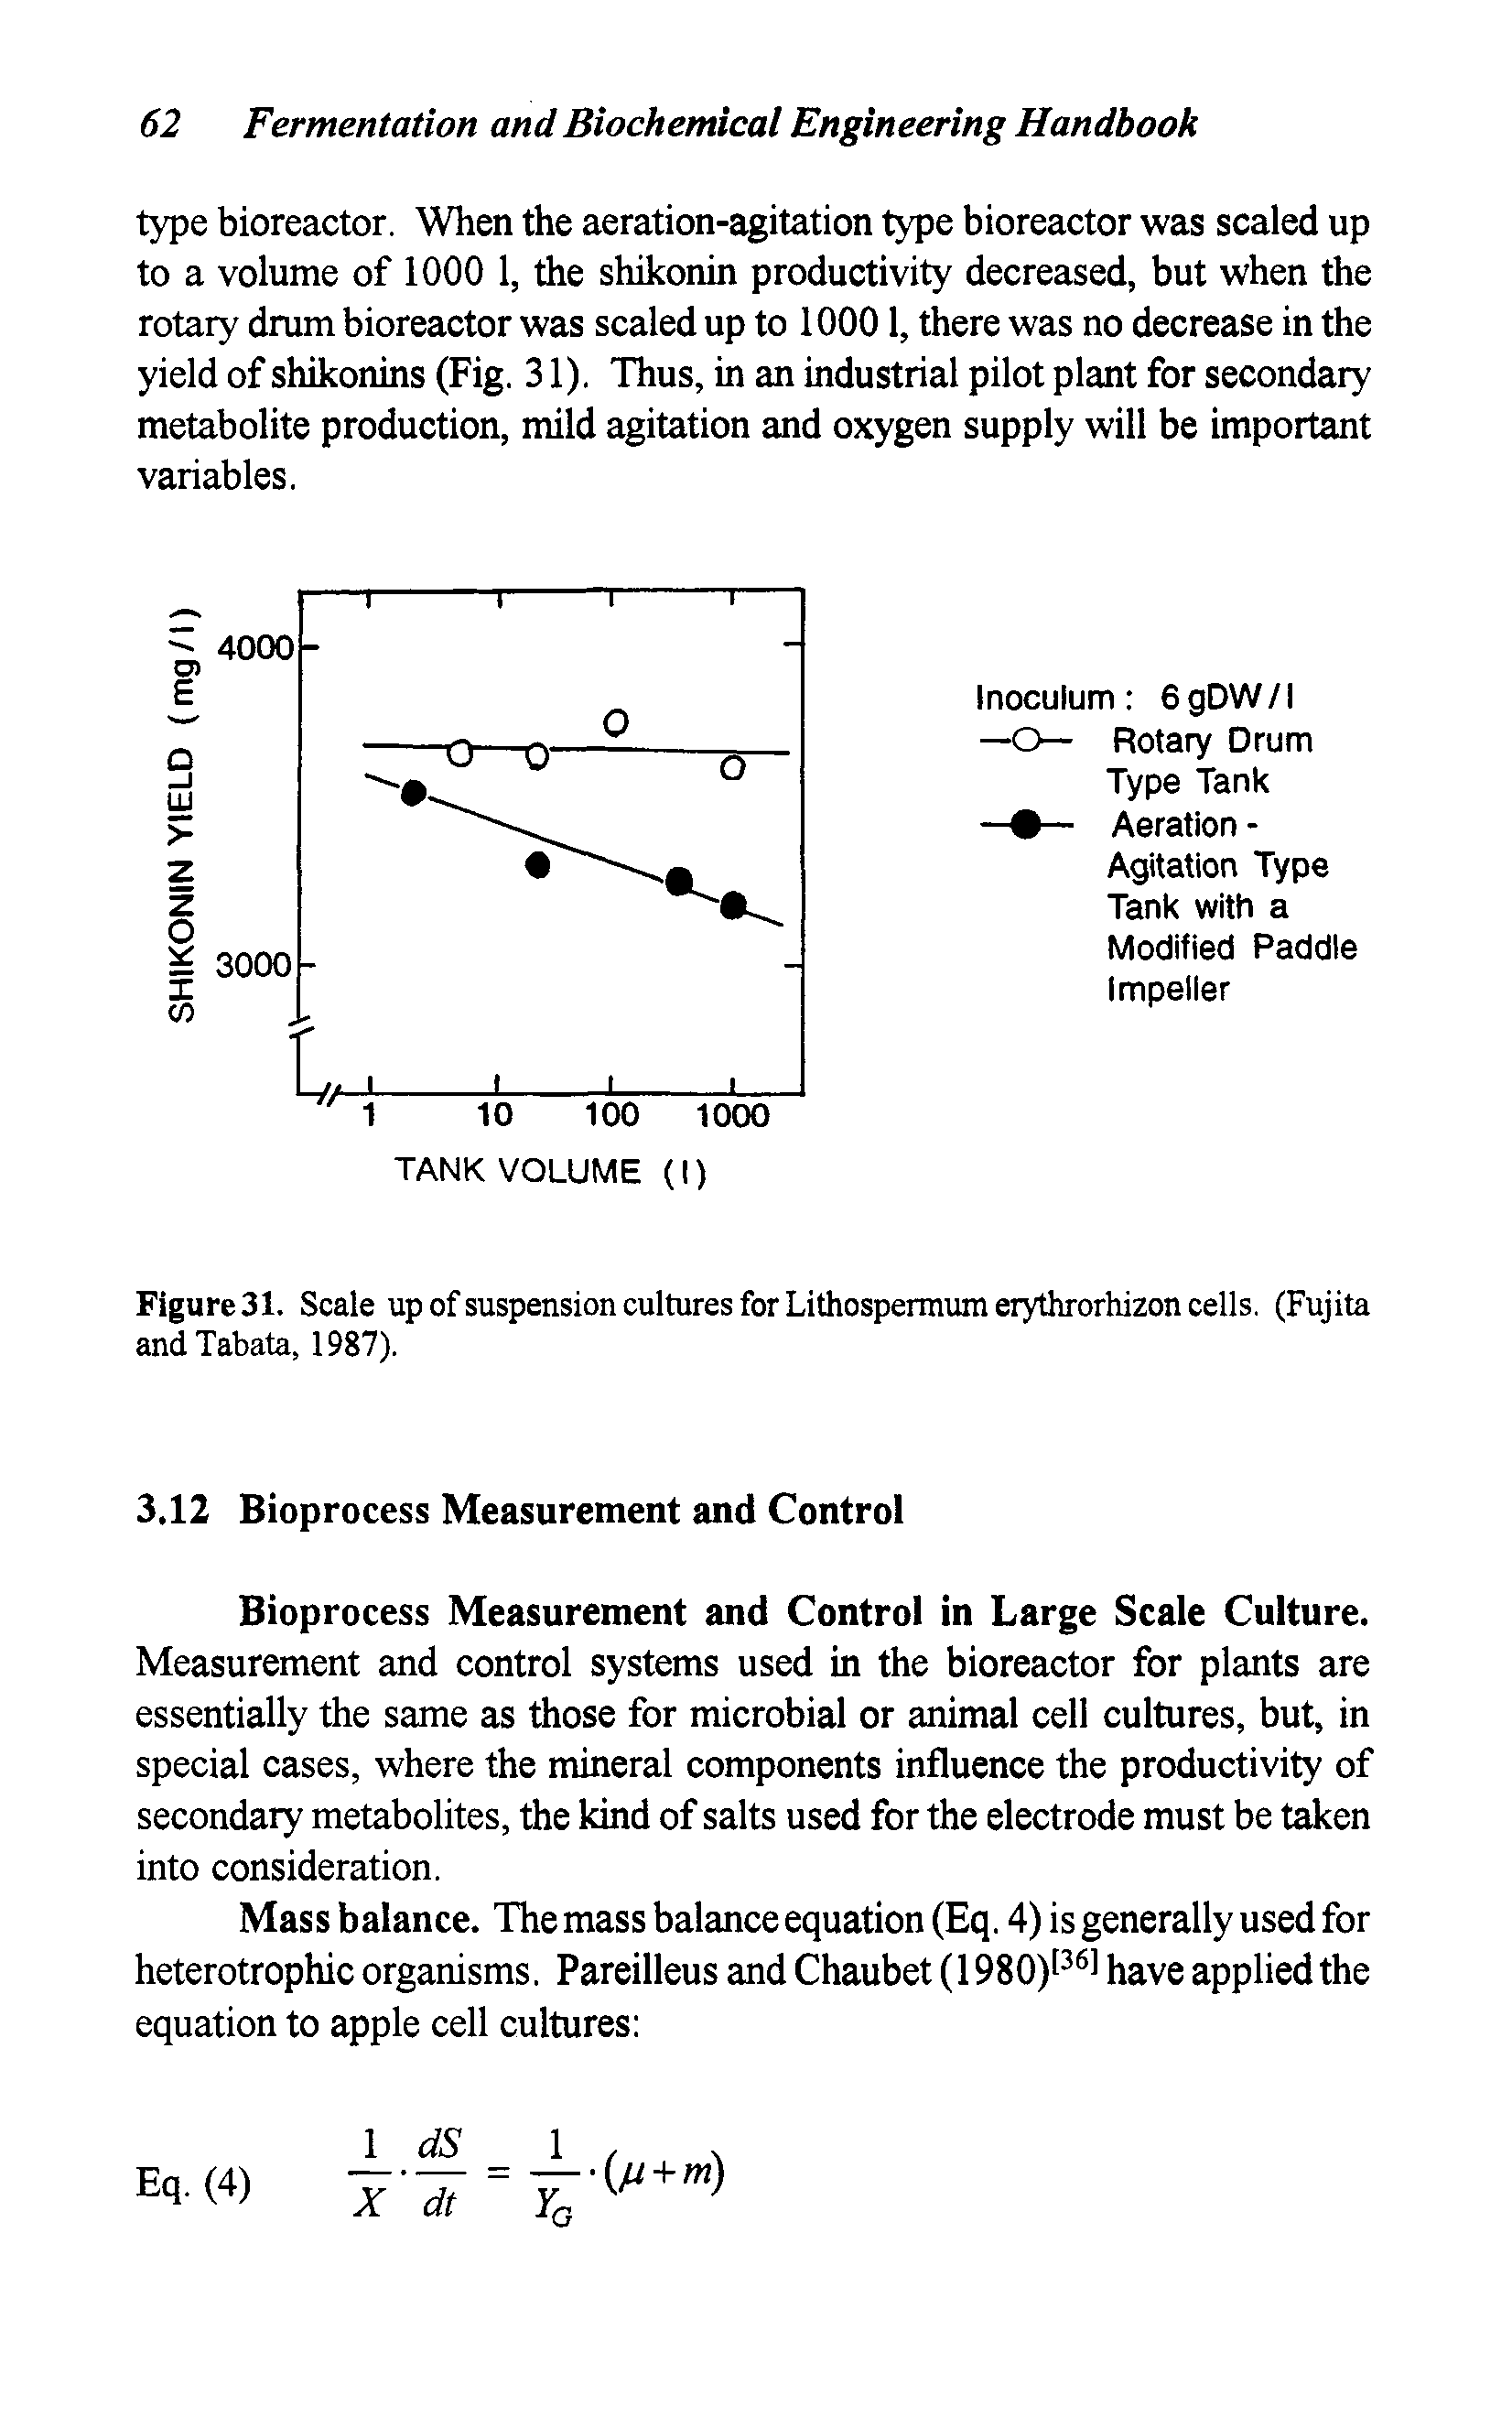 Figure 31. Scale up of suspension cultures for Lithospermum erythrorhizon cells. (Fujita andTabata, 1987).